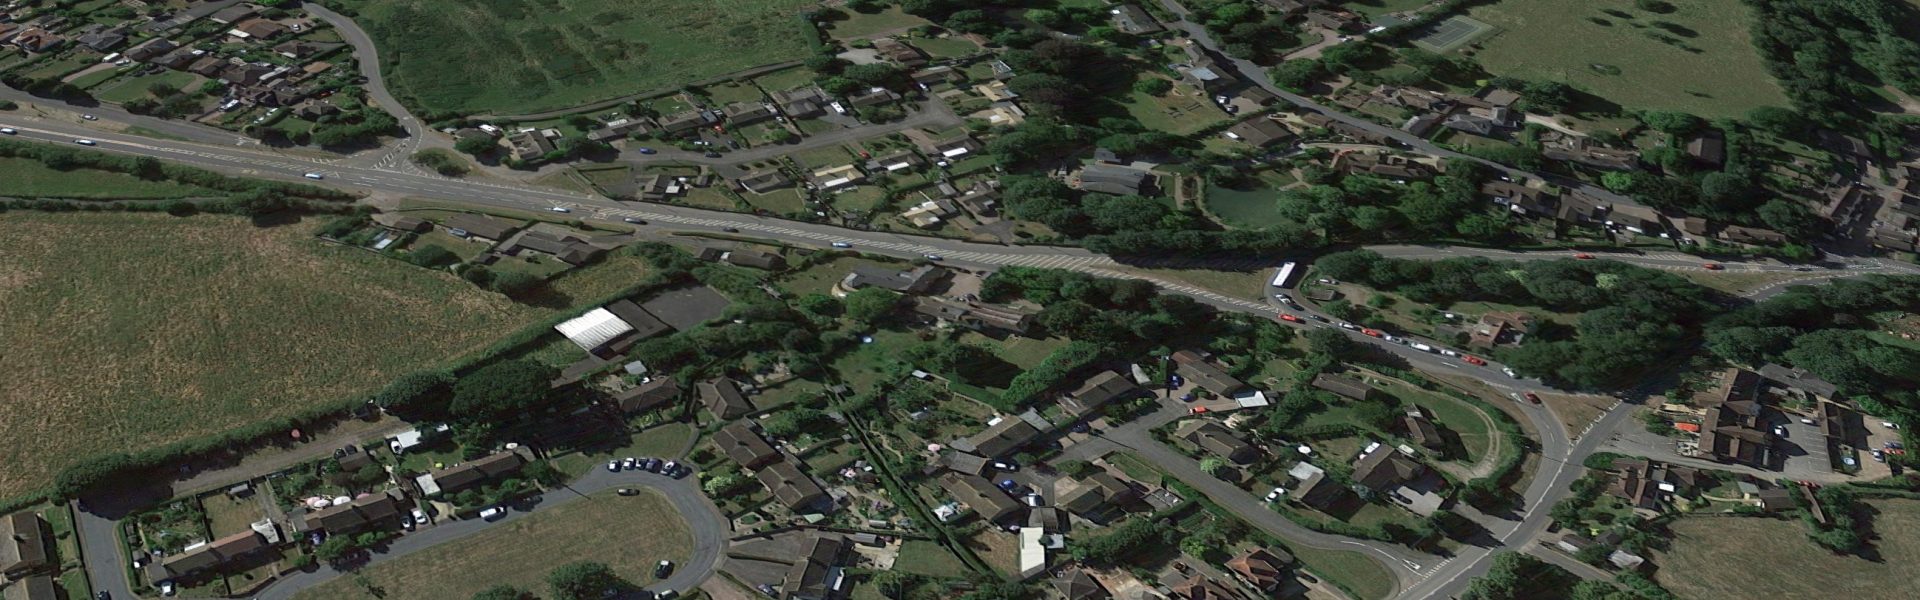 Powick Parish Council aerial view